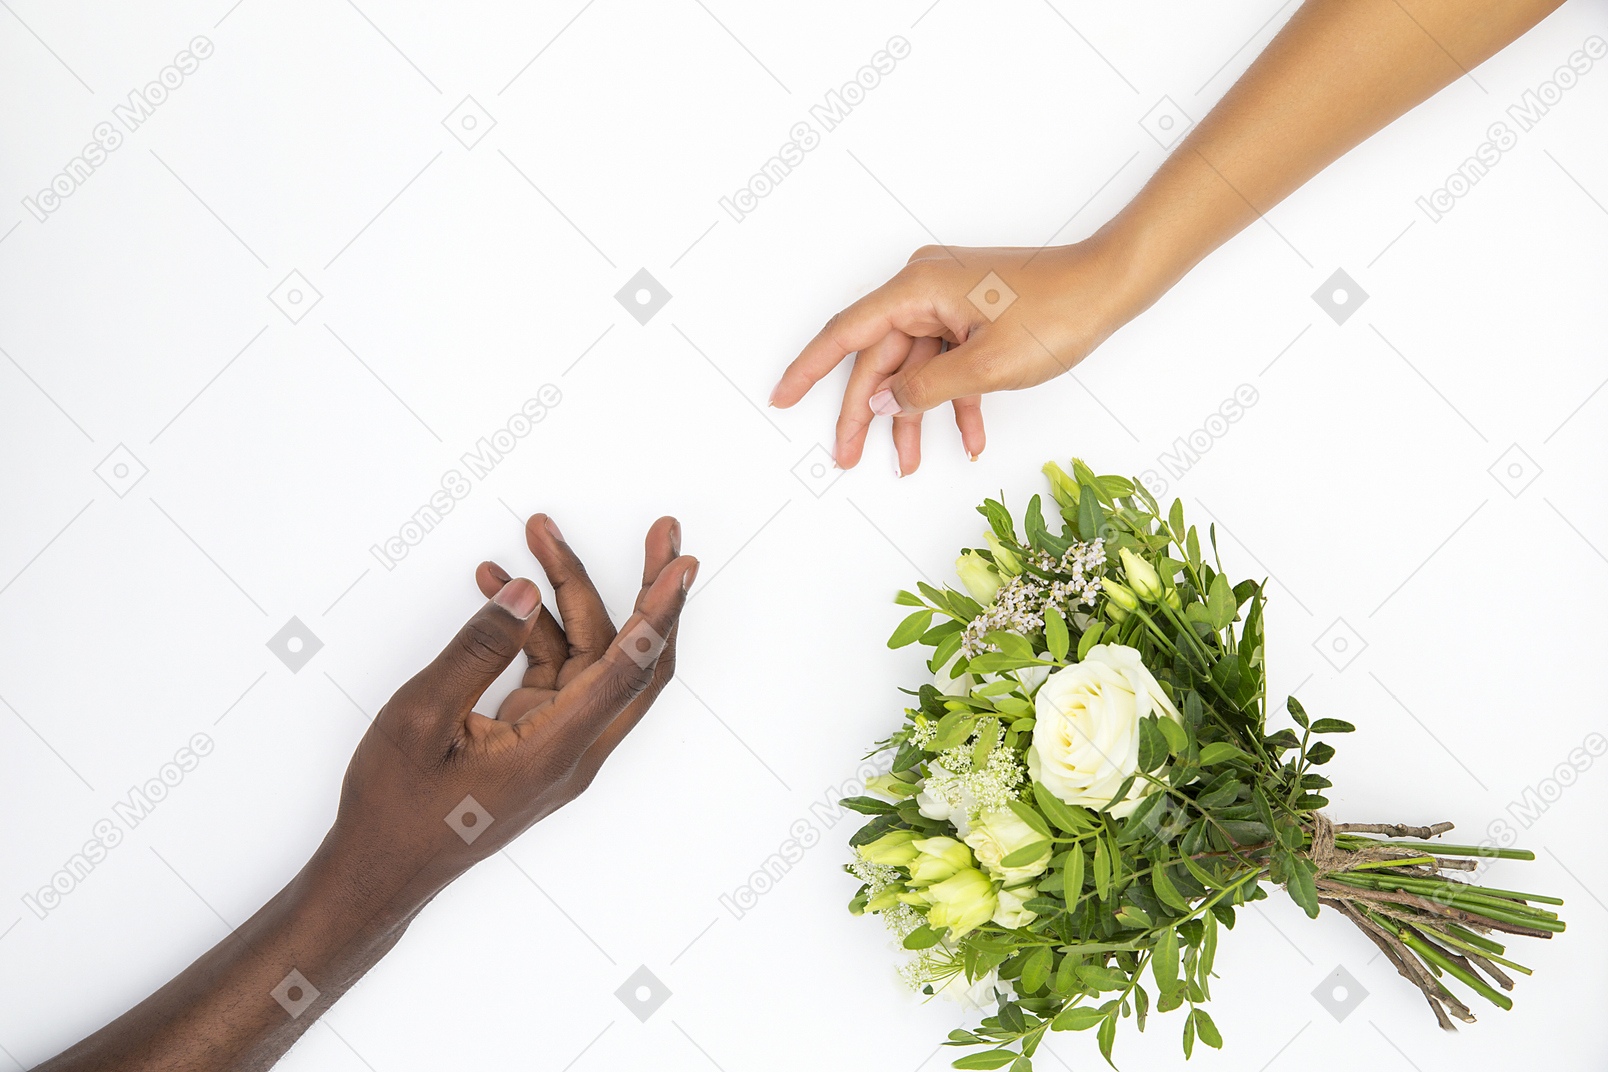 흑인 남성과 백인 여성의 손은 거의 꽃 꽃다발에 가까운 감동